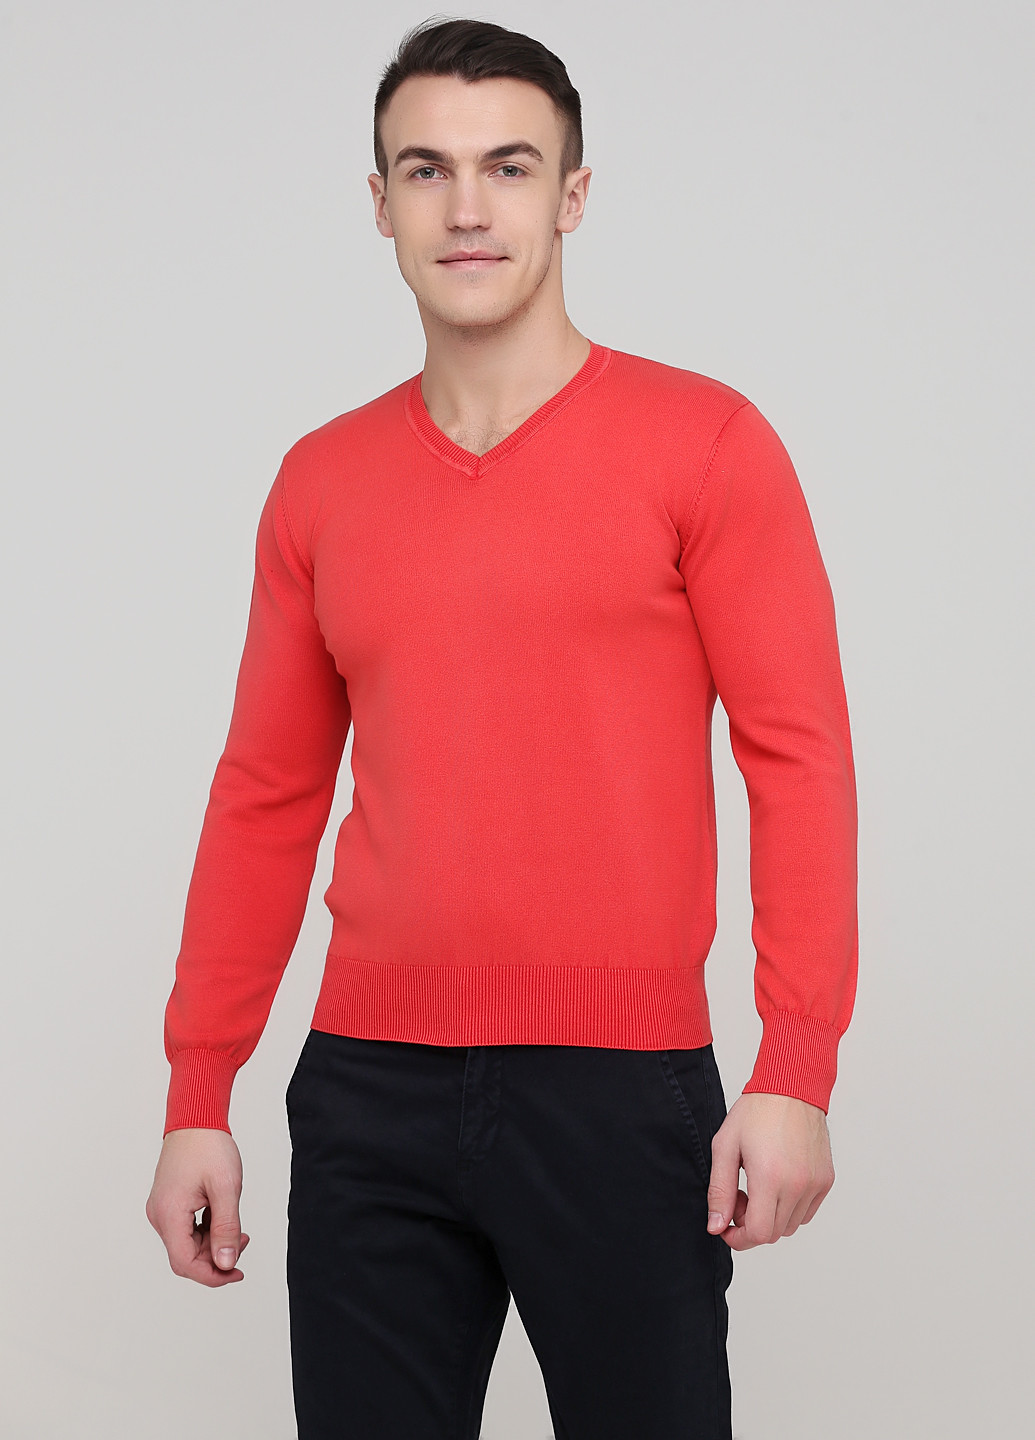 Коралловый демисезонный пуловер пуловер Cashmere Company